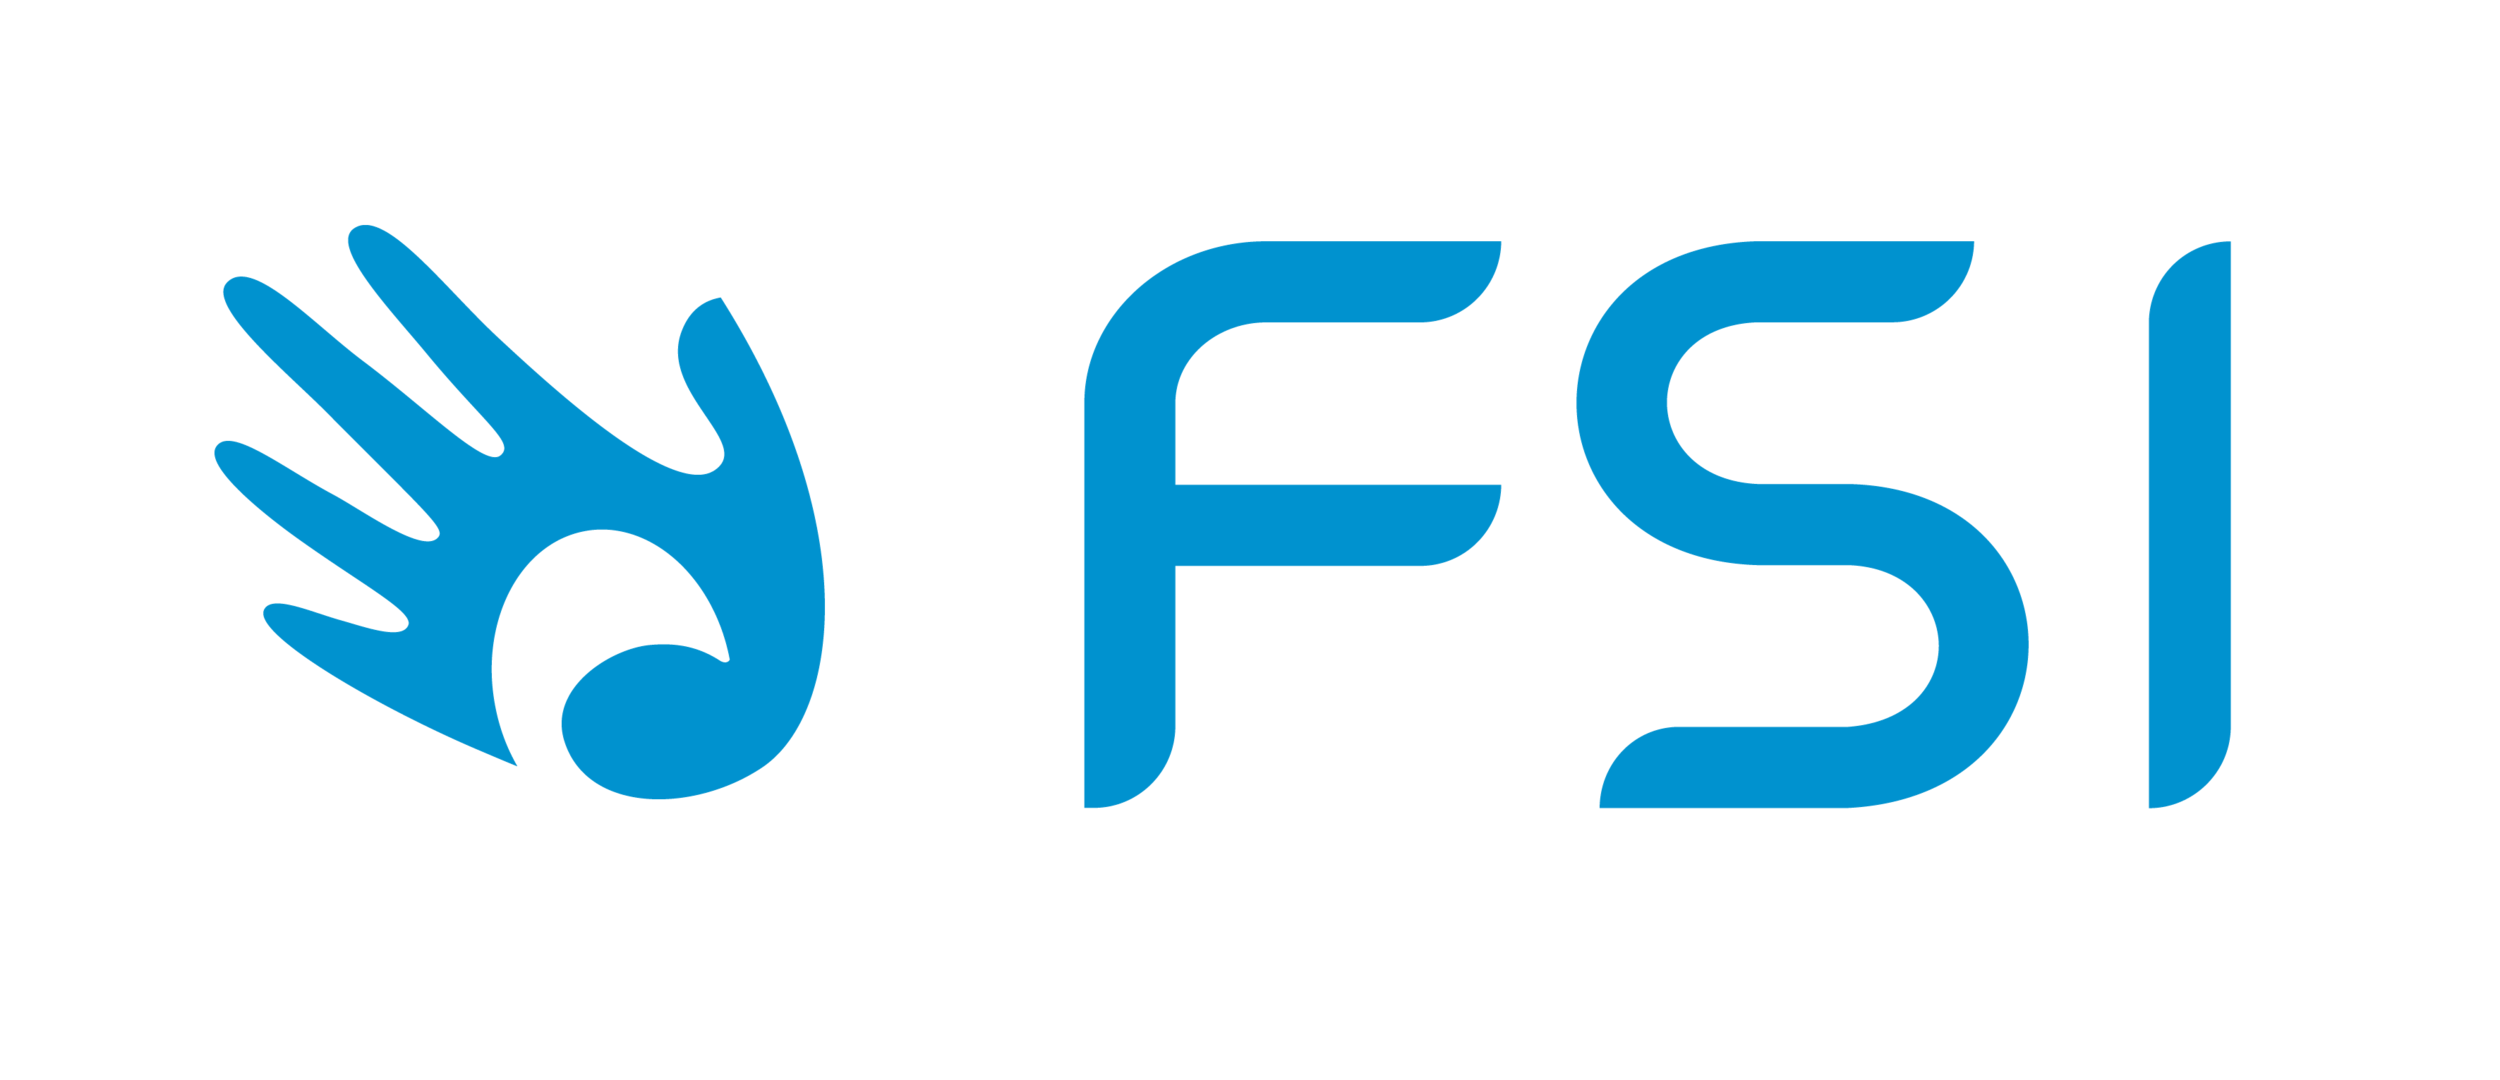 FSI logo -png - transparent background.png